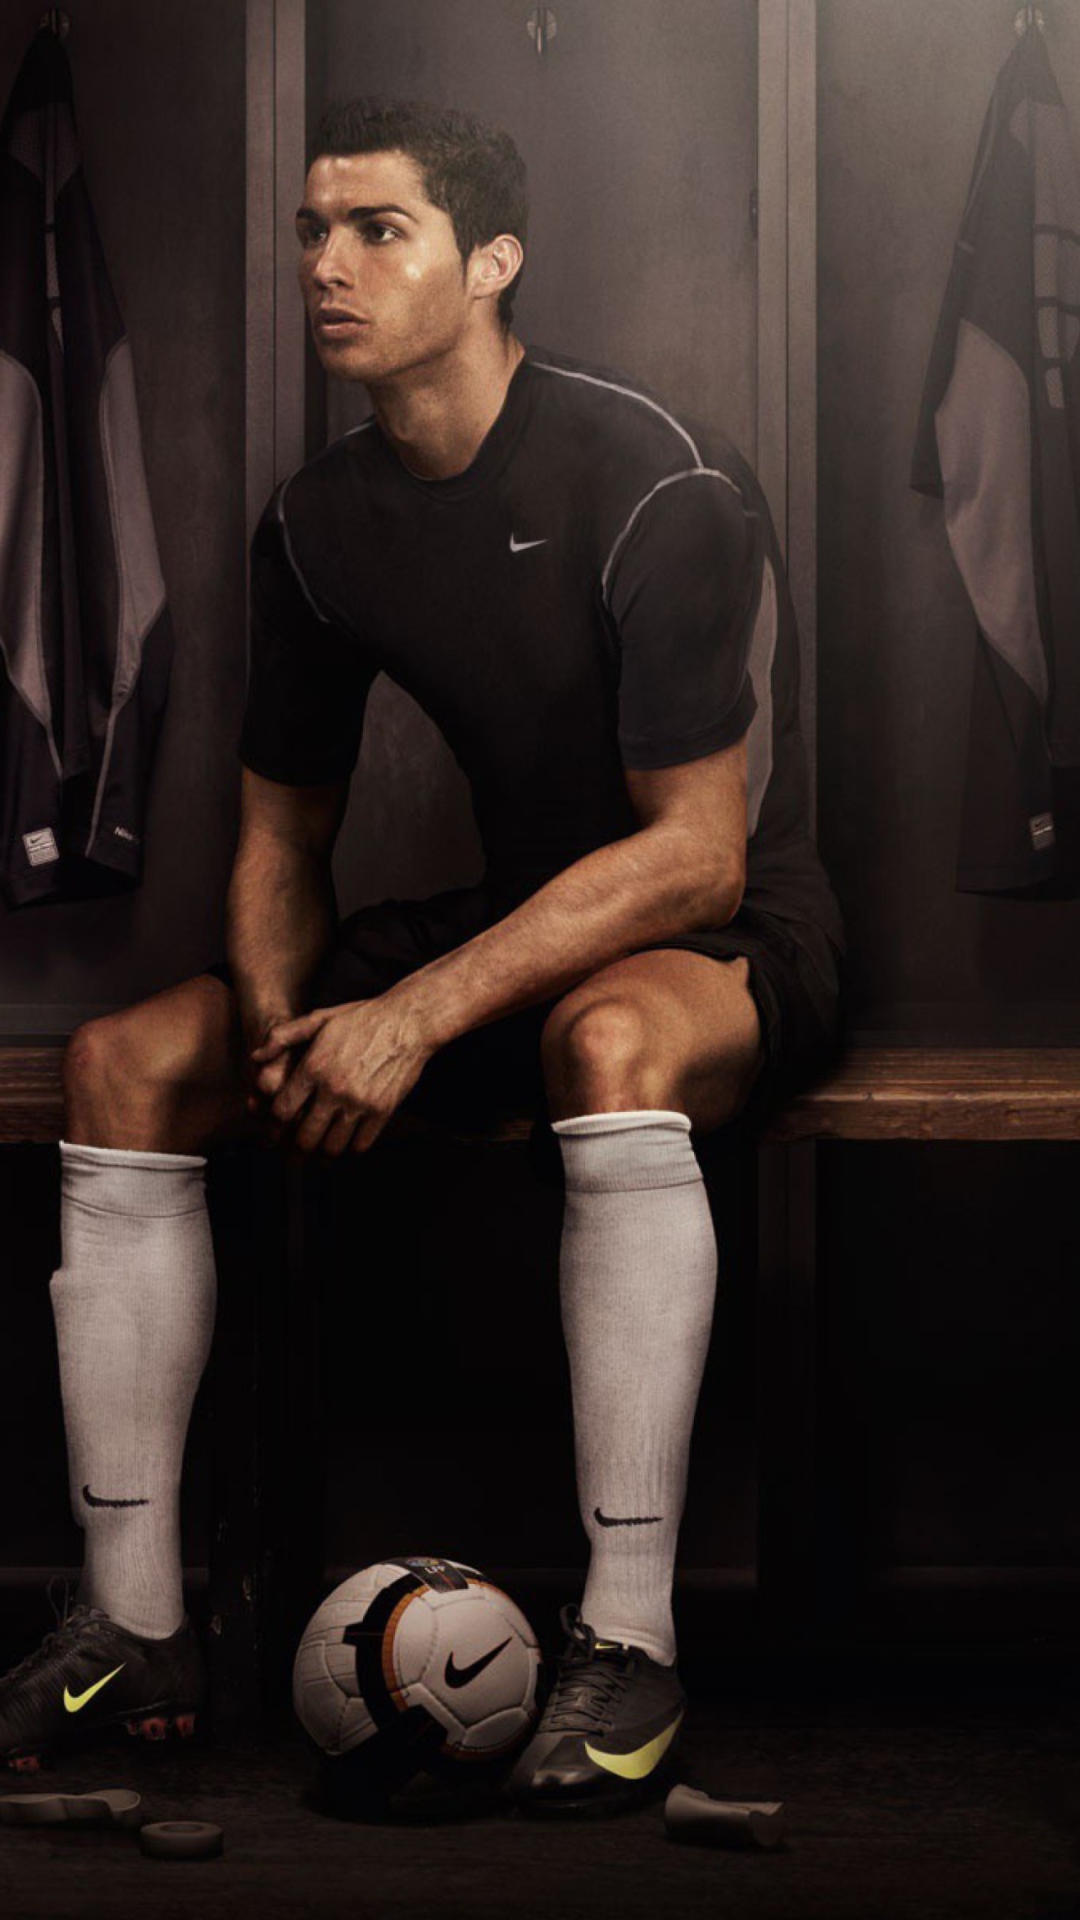 Cristiano Ronaldo wallpaper 1080x1920